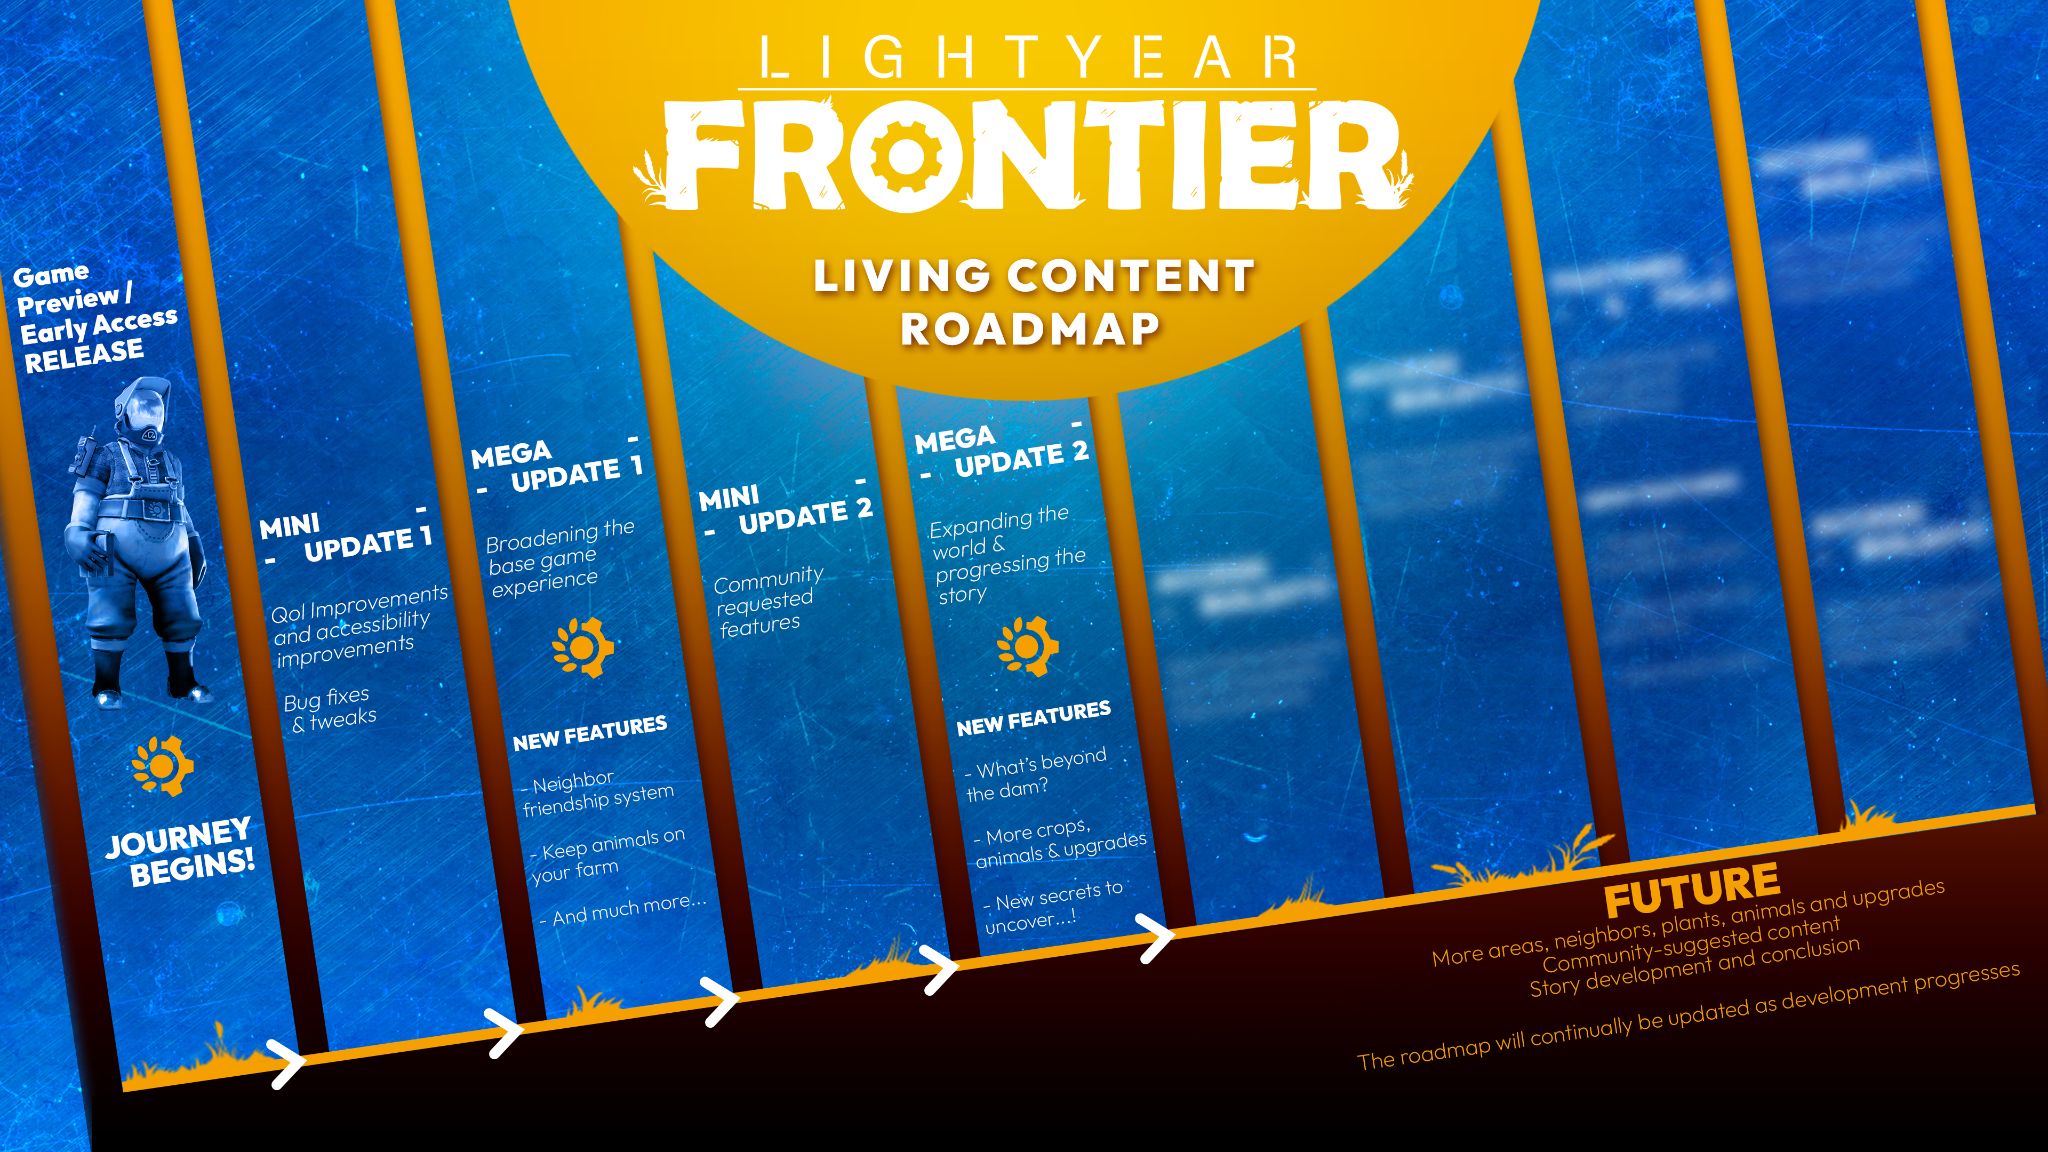 Lightyear Frontier roadmap